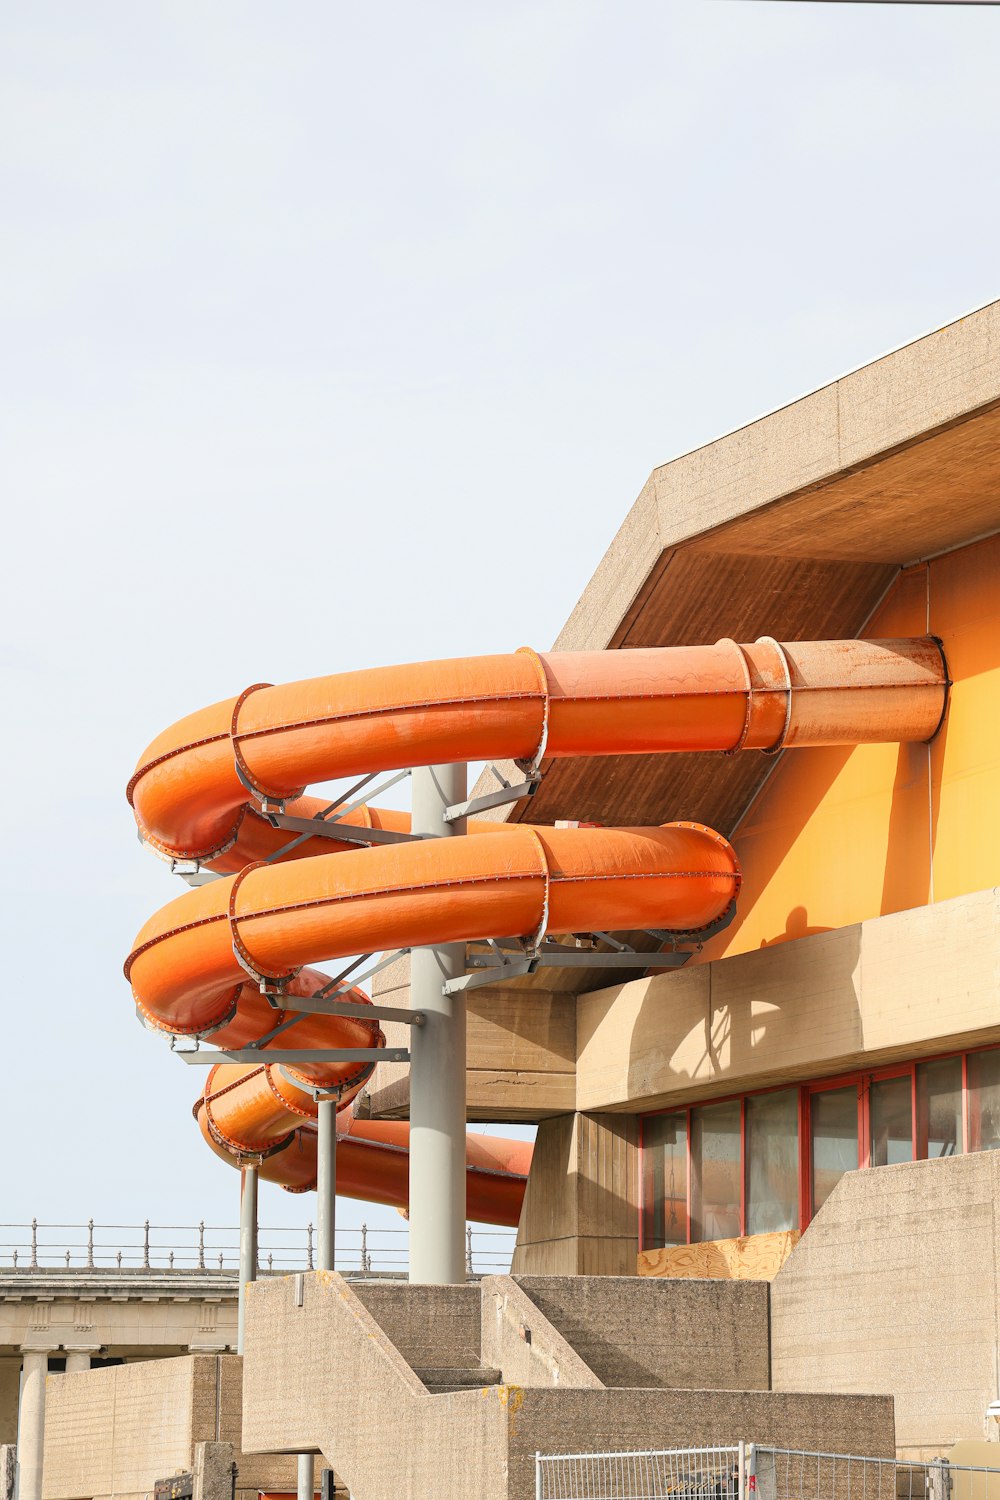 eine Reihe orangefarbener Wasserrutschen vor einem Gebäude